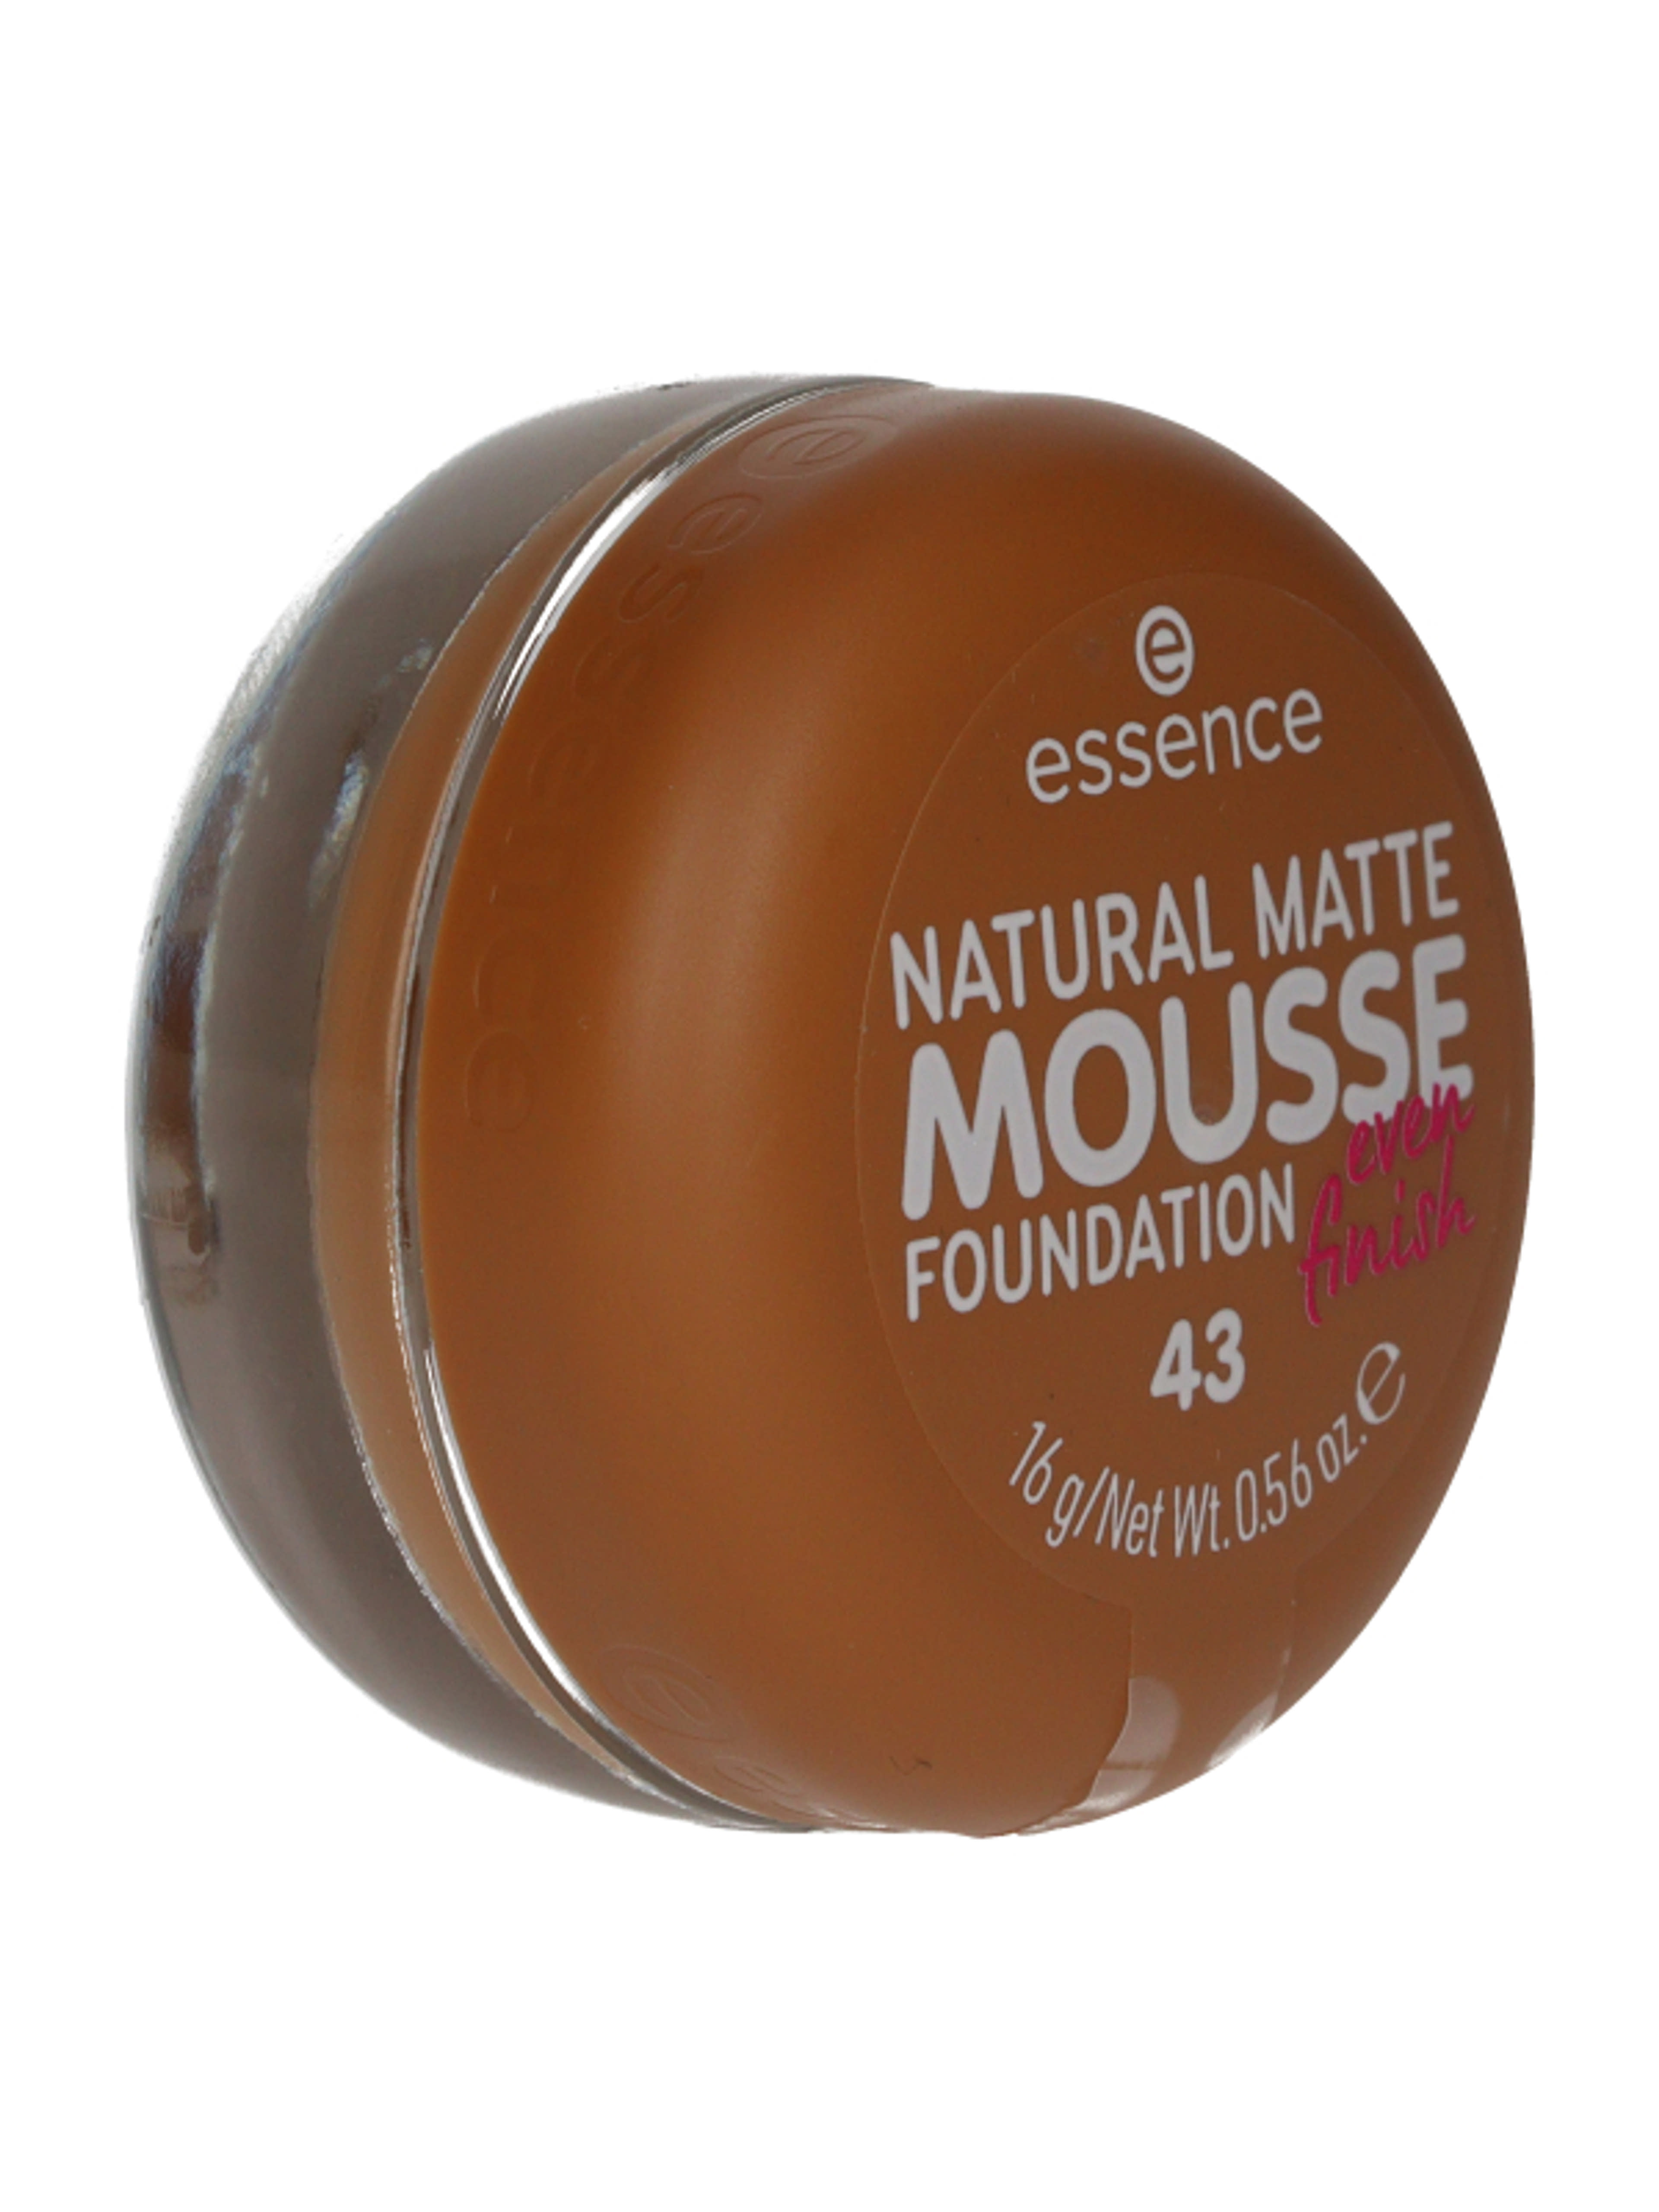 Essence Natural Matte Mousse alapozó /43 - 1 db-2